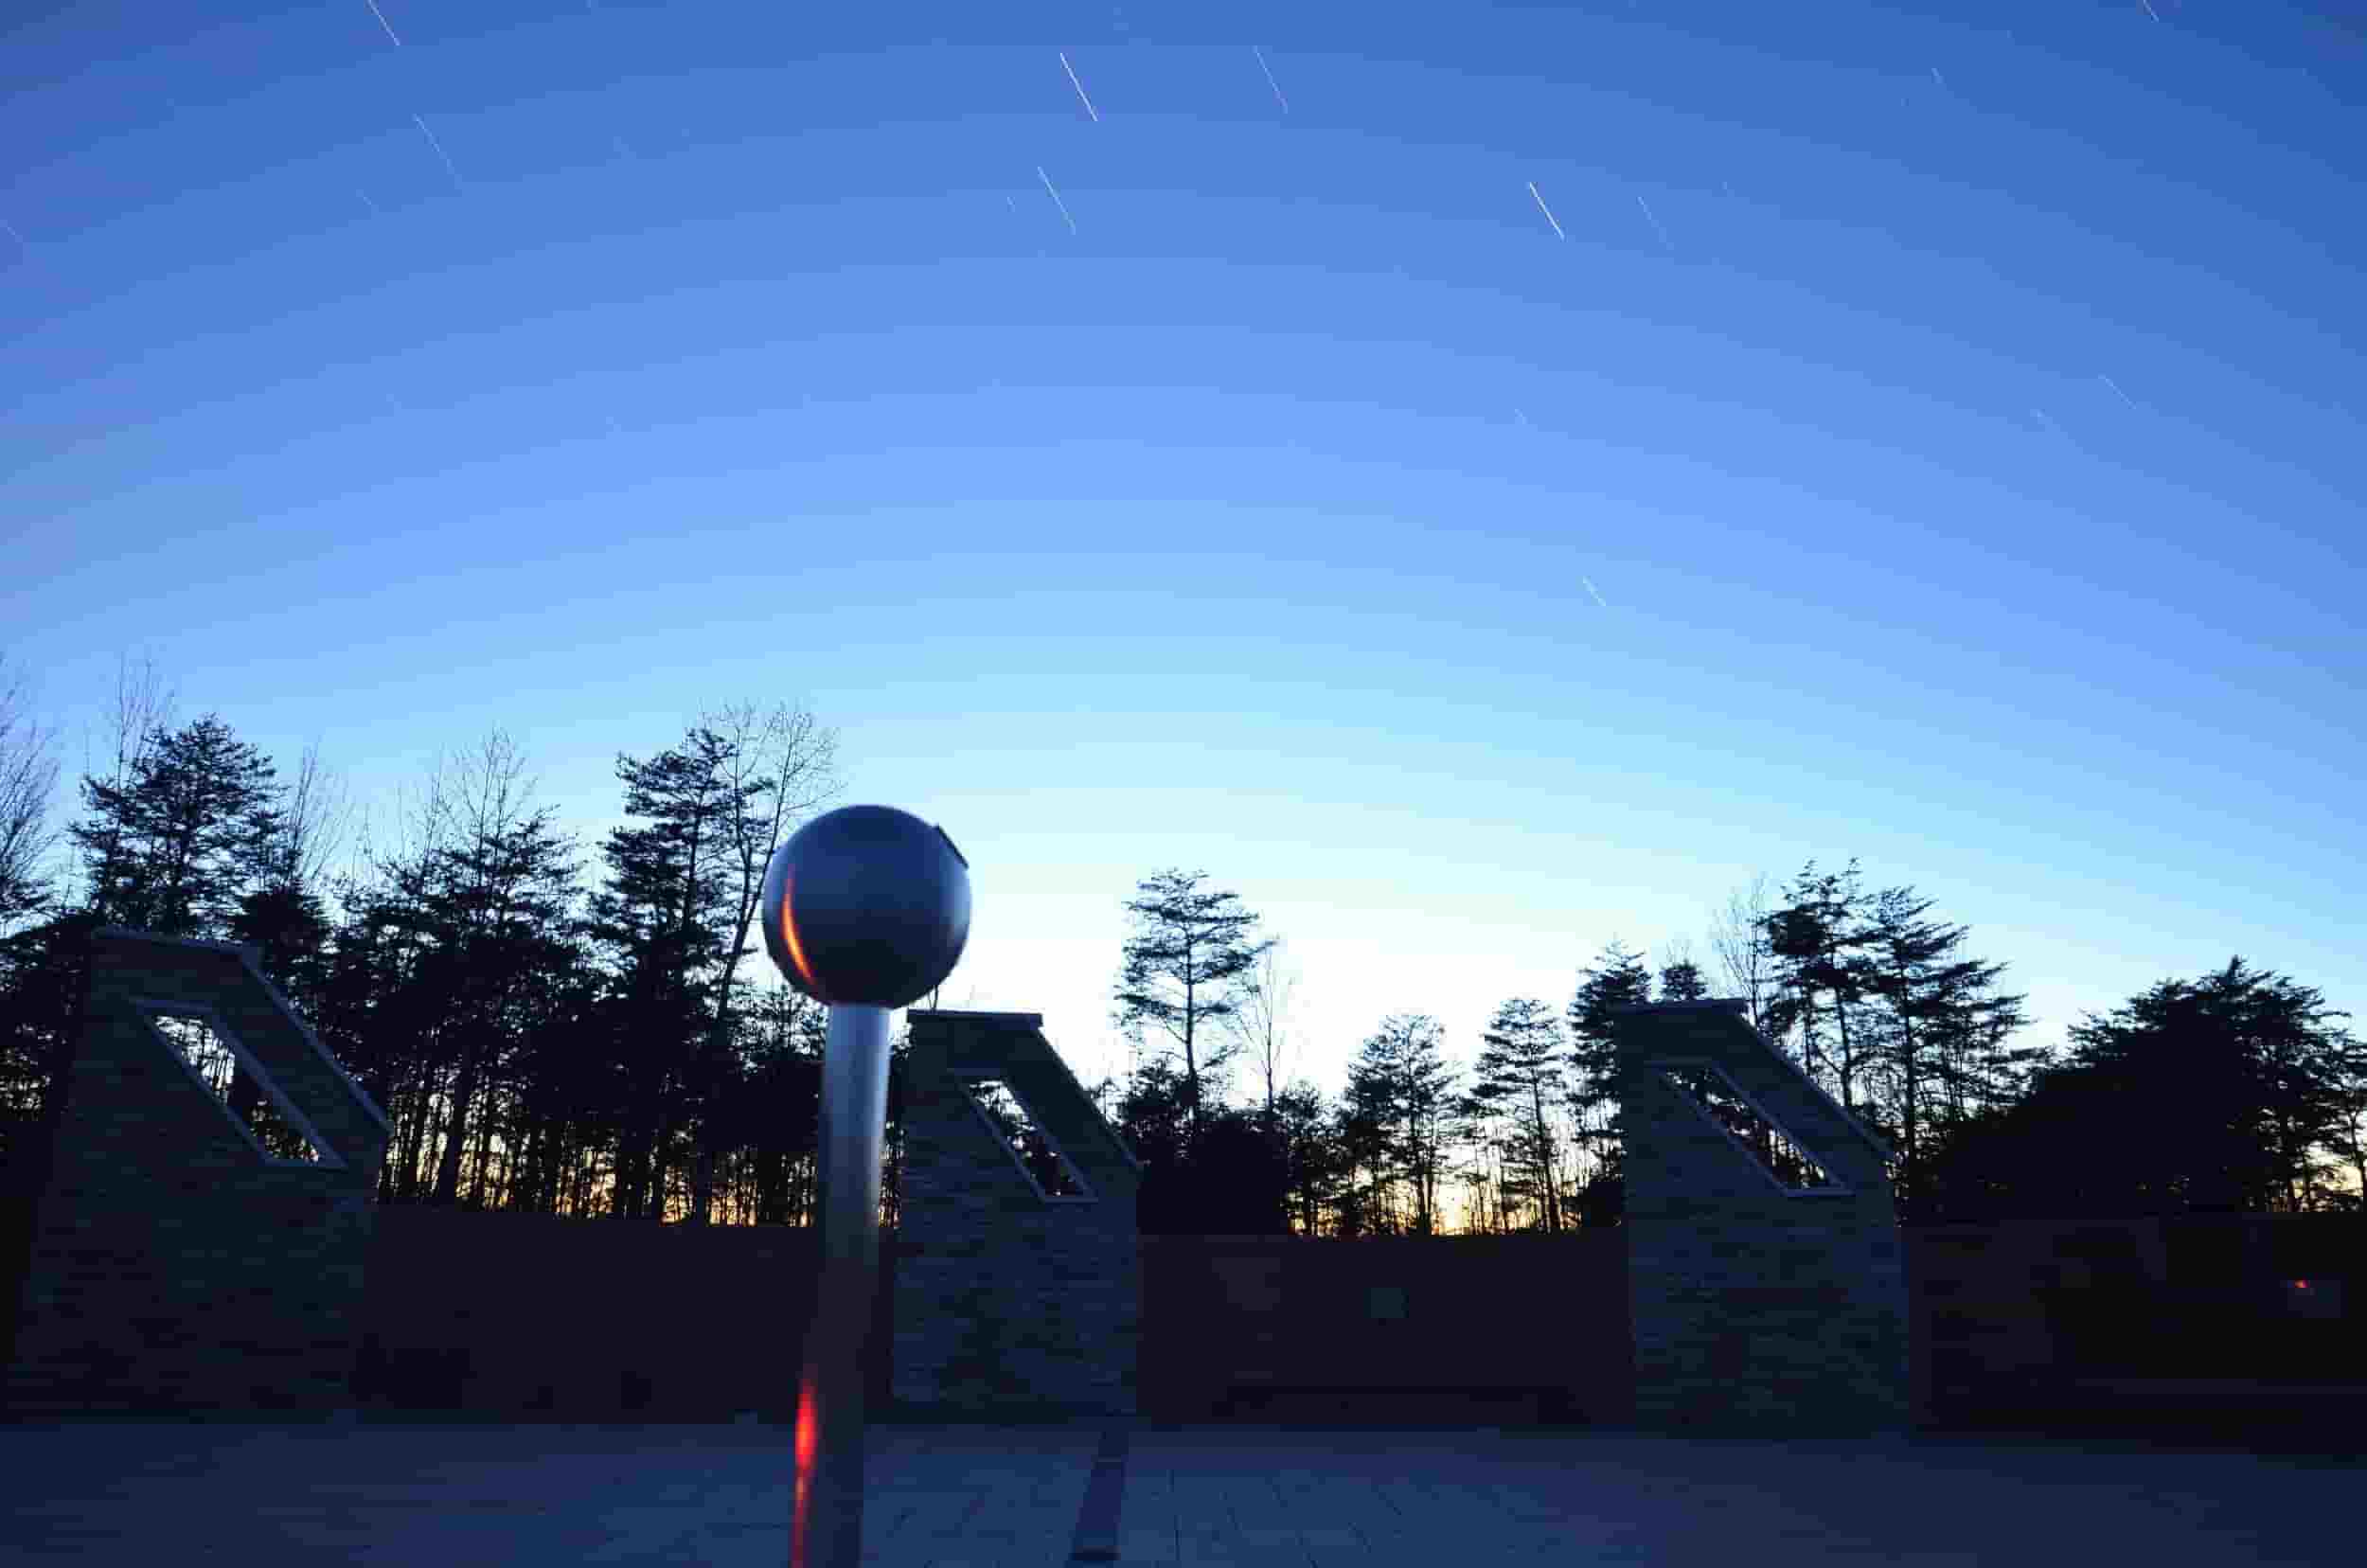 John Glenn Astronomy Park